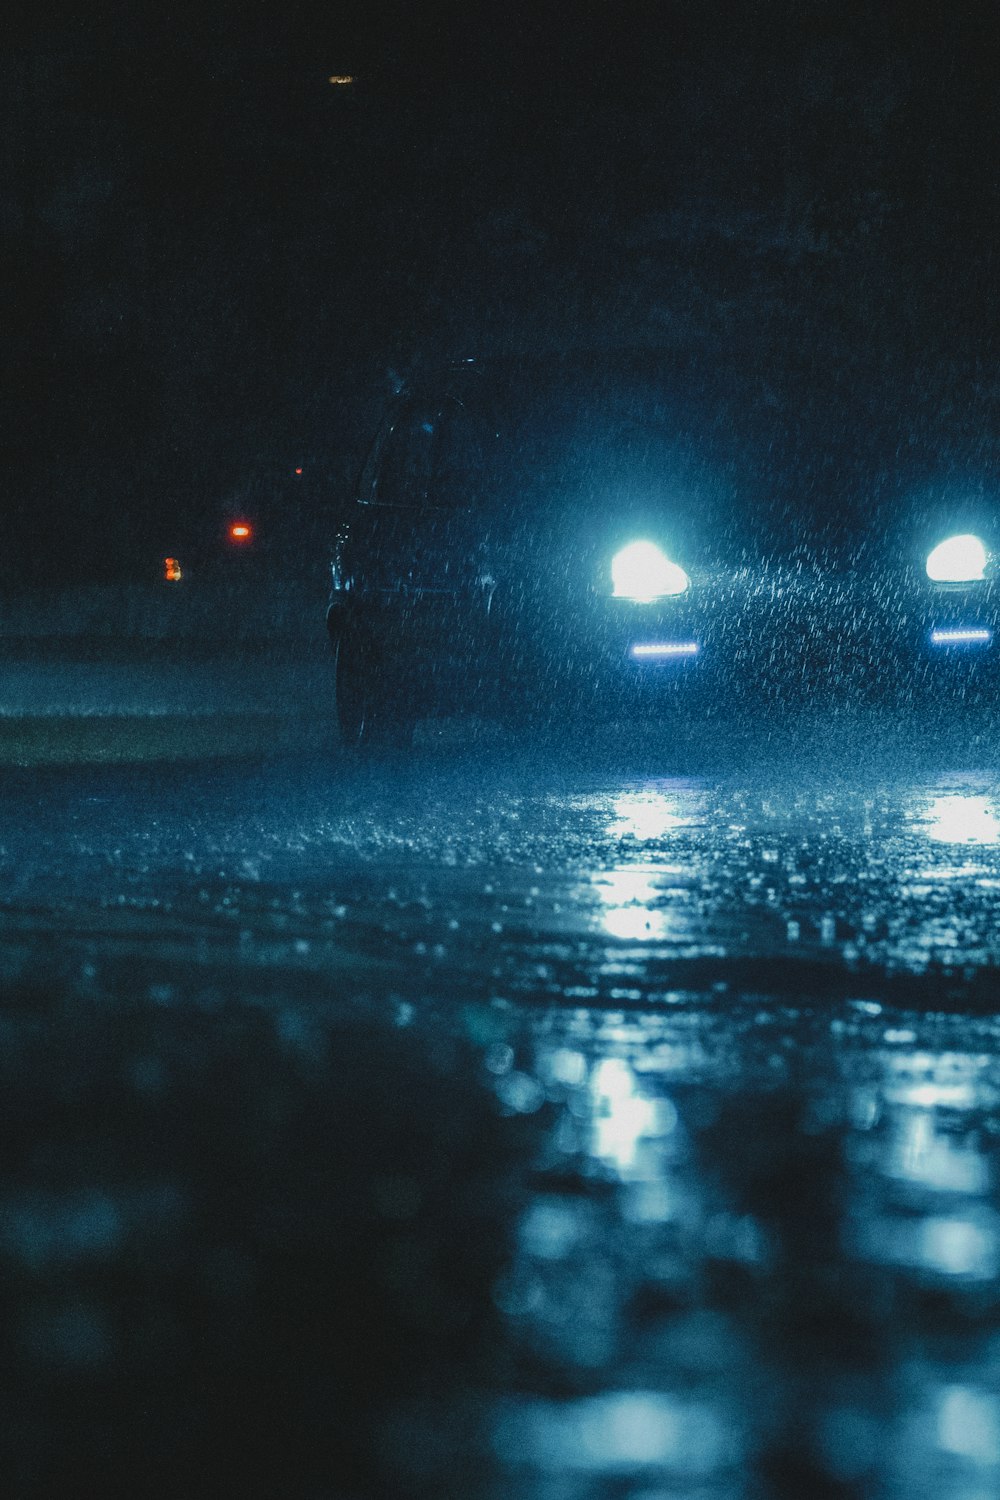 veículo com farol ligado rodando em estrada molhada durante a noite